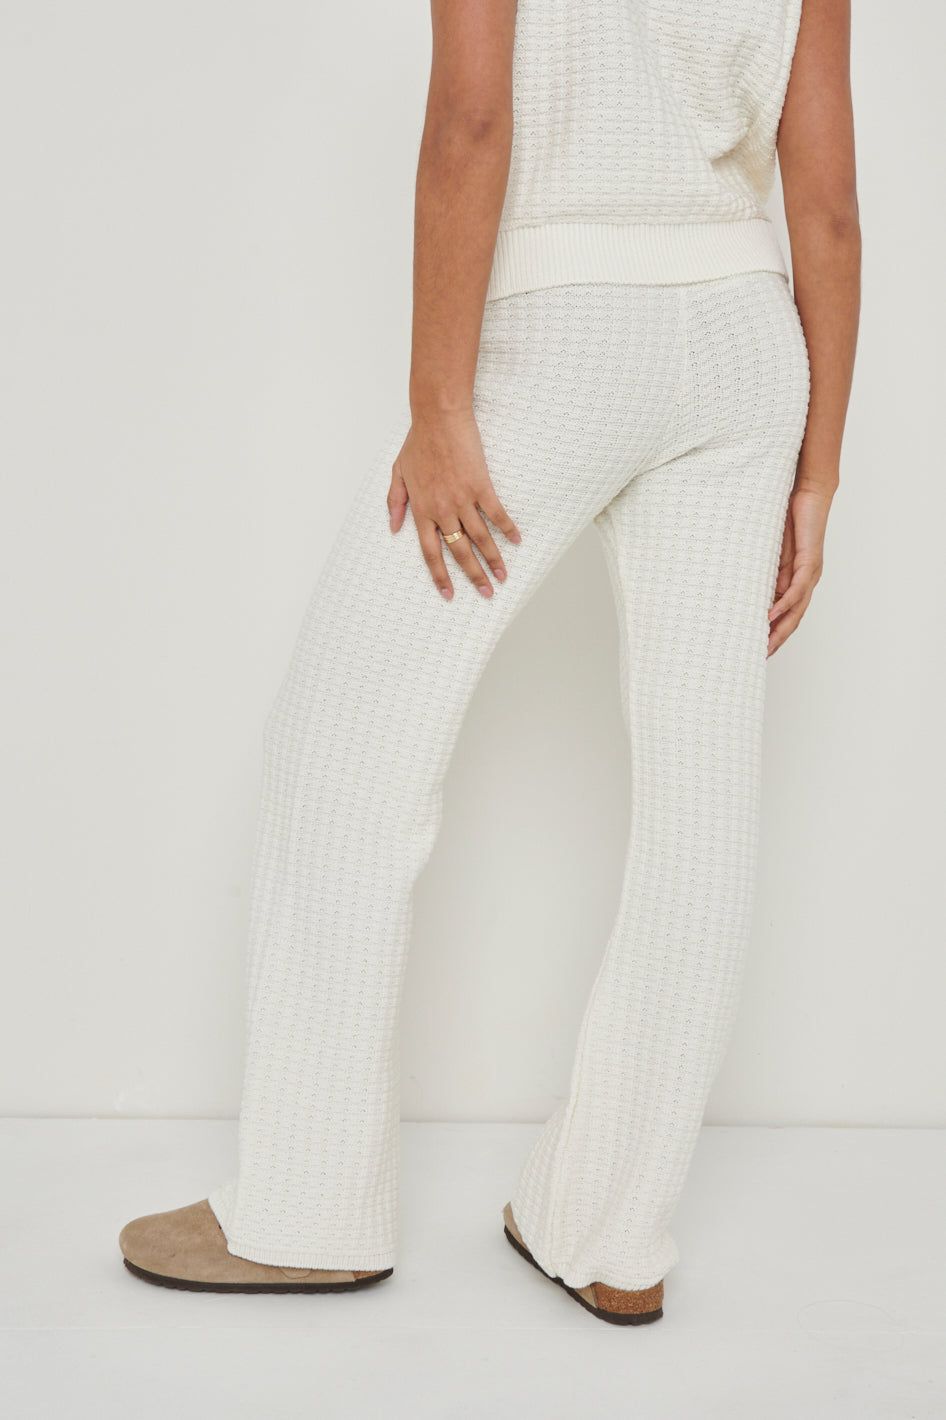 Quinn Crochet Knit Bottoms - White